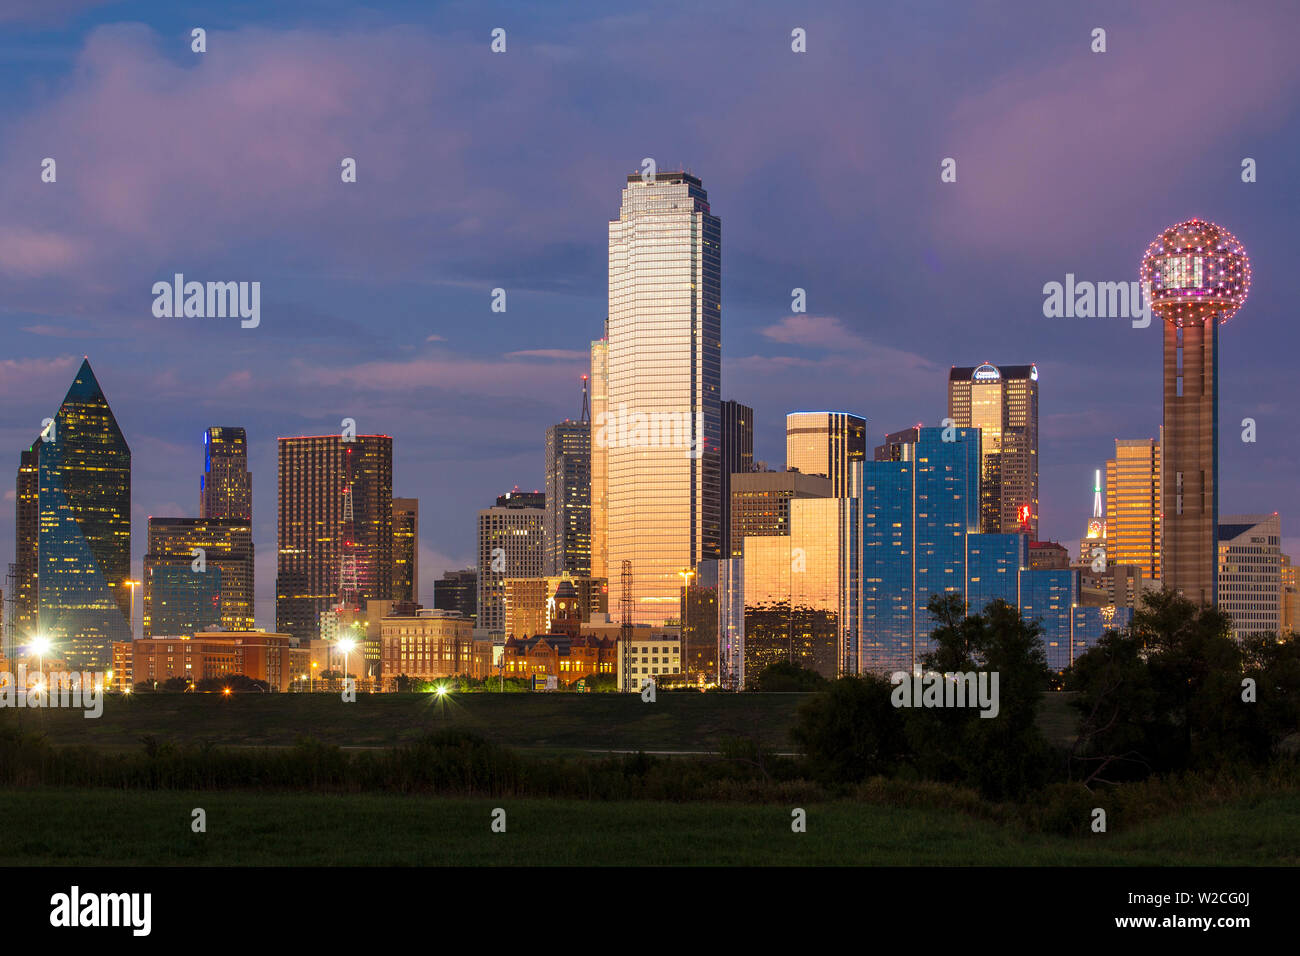 El horizonte de la ciudad de Dallas y el Reunion Tower, Texas, EE.UU. Foto de stock